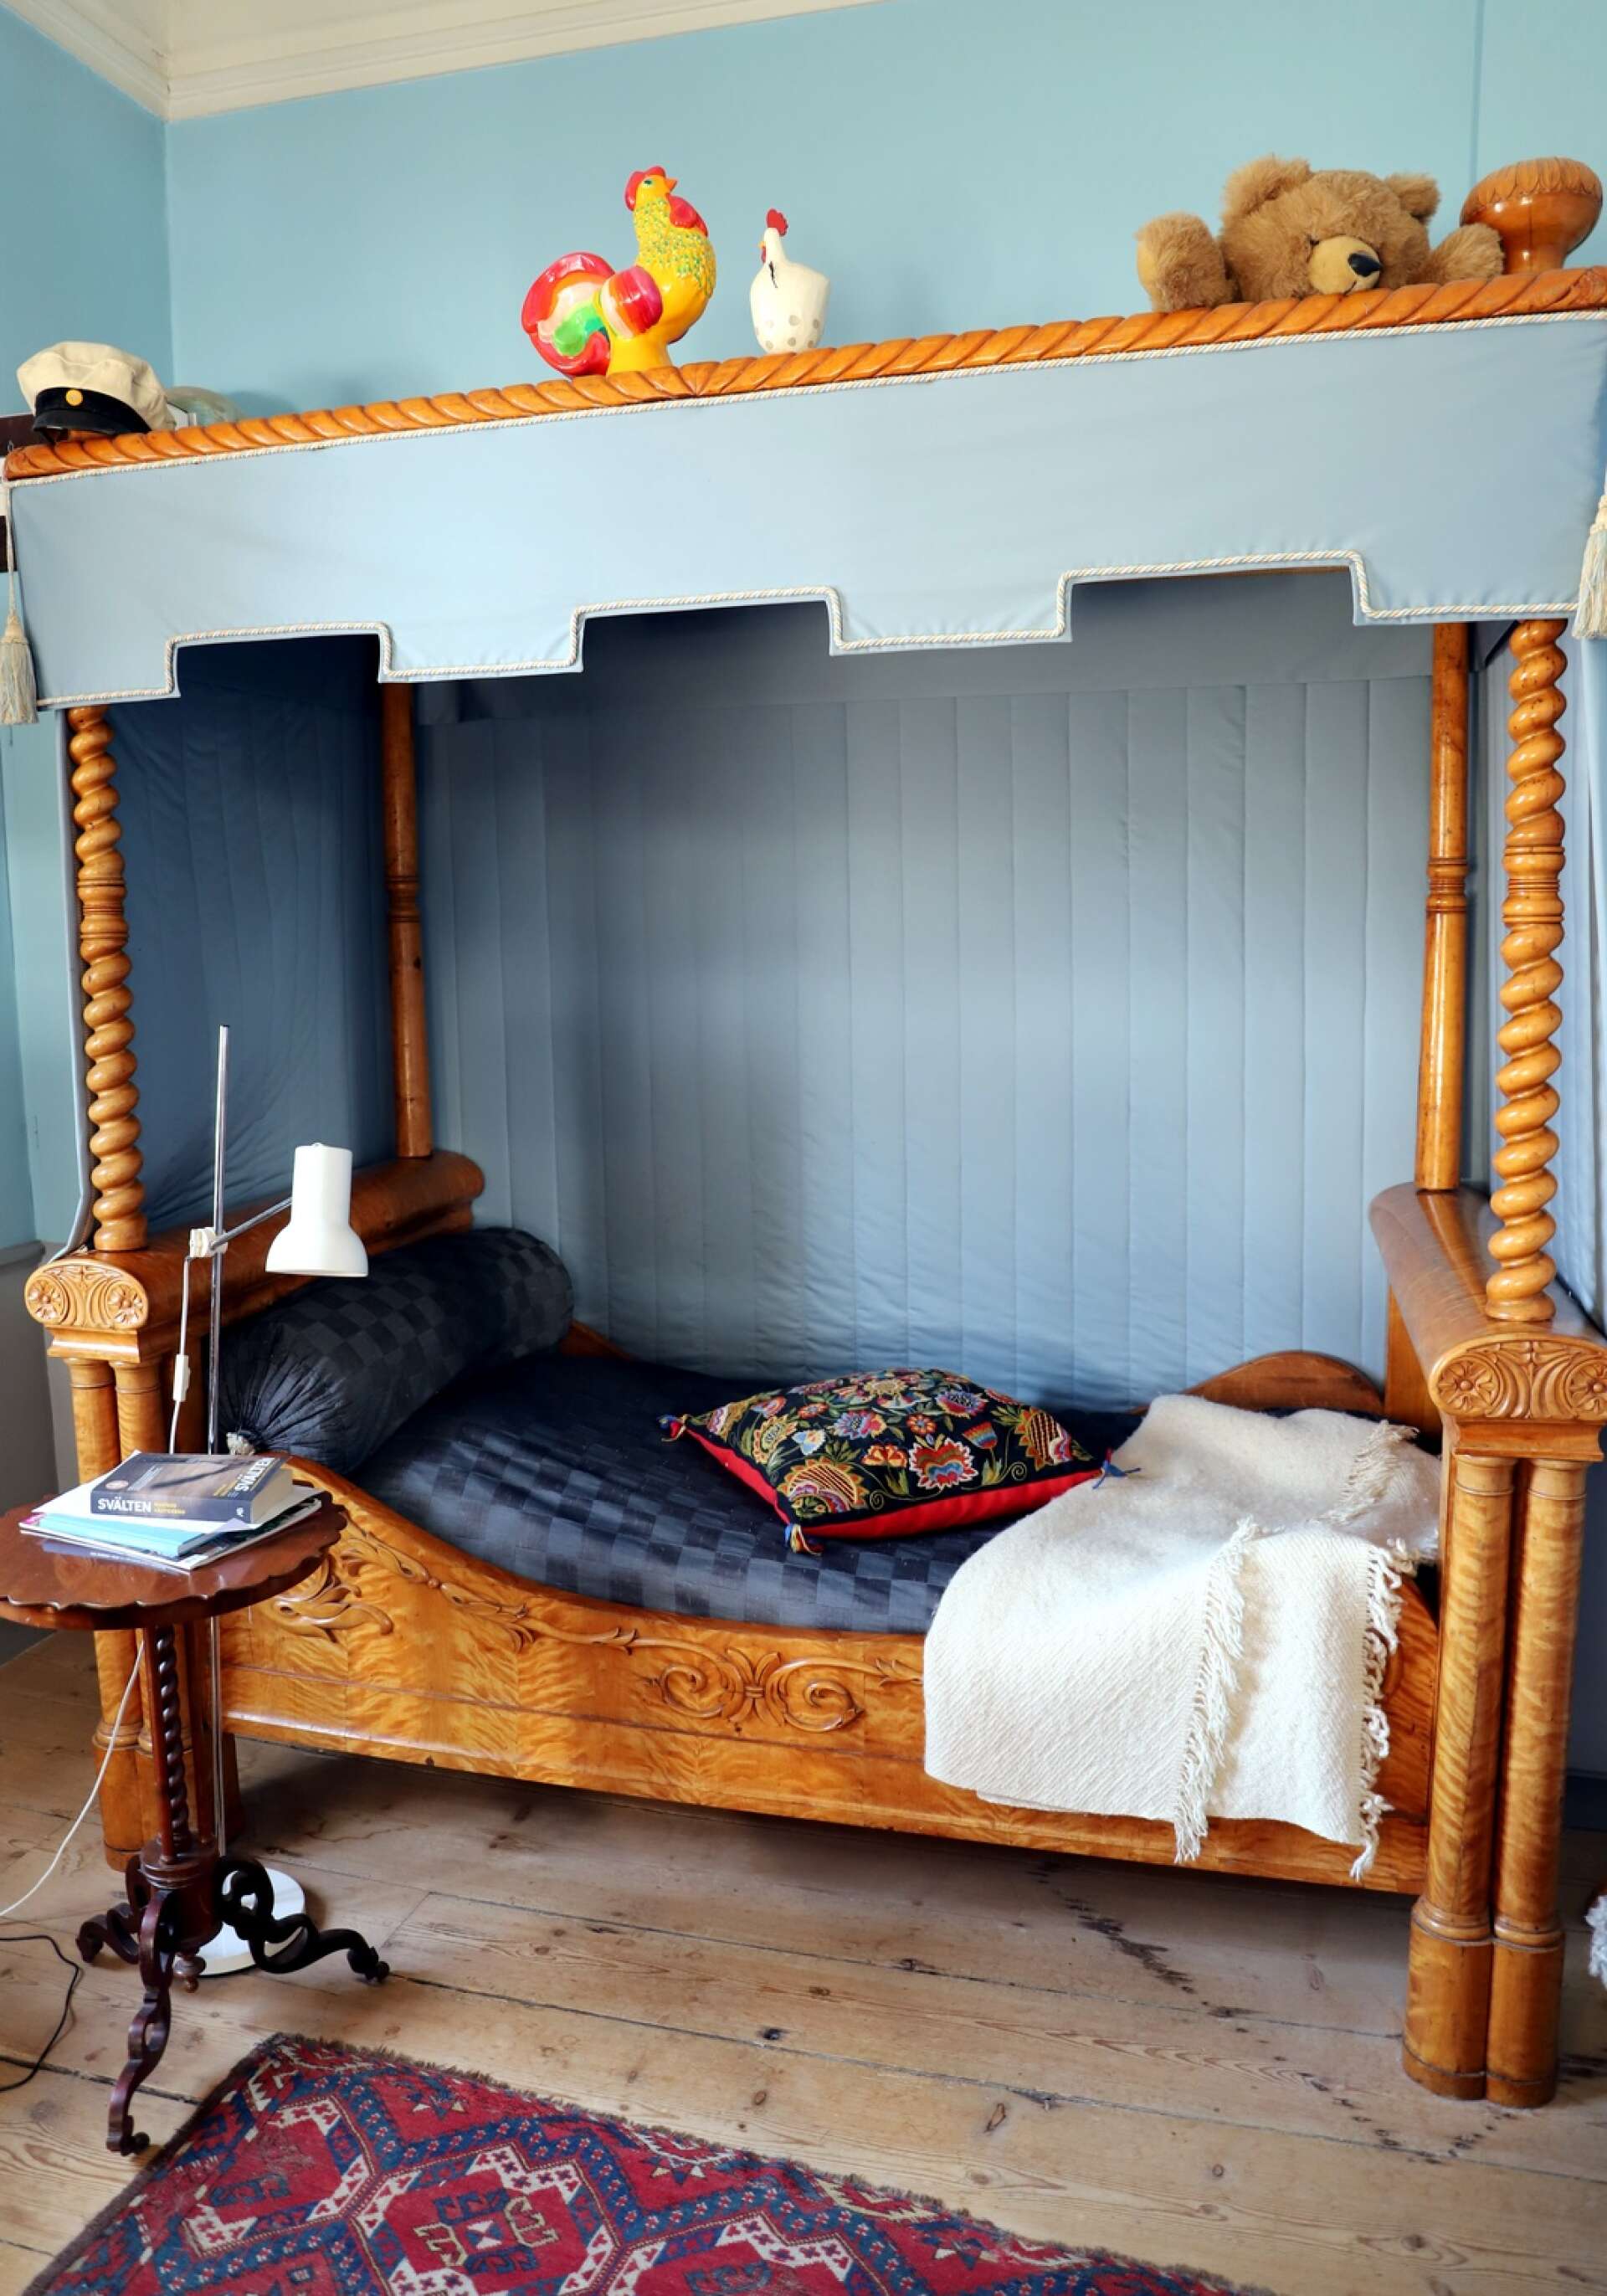 Den rikt dekorerade sängen var en gång en gåva från en blivande kung till en älskarinna. Kronprins Oscar, som senare blev Oscar I, och Emilie Högqvist hade ett förhållande i tio år och fick två barn.